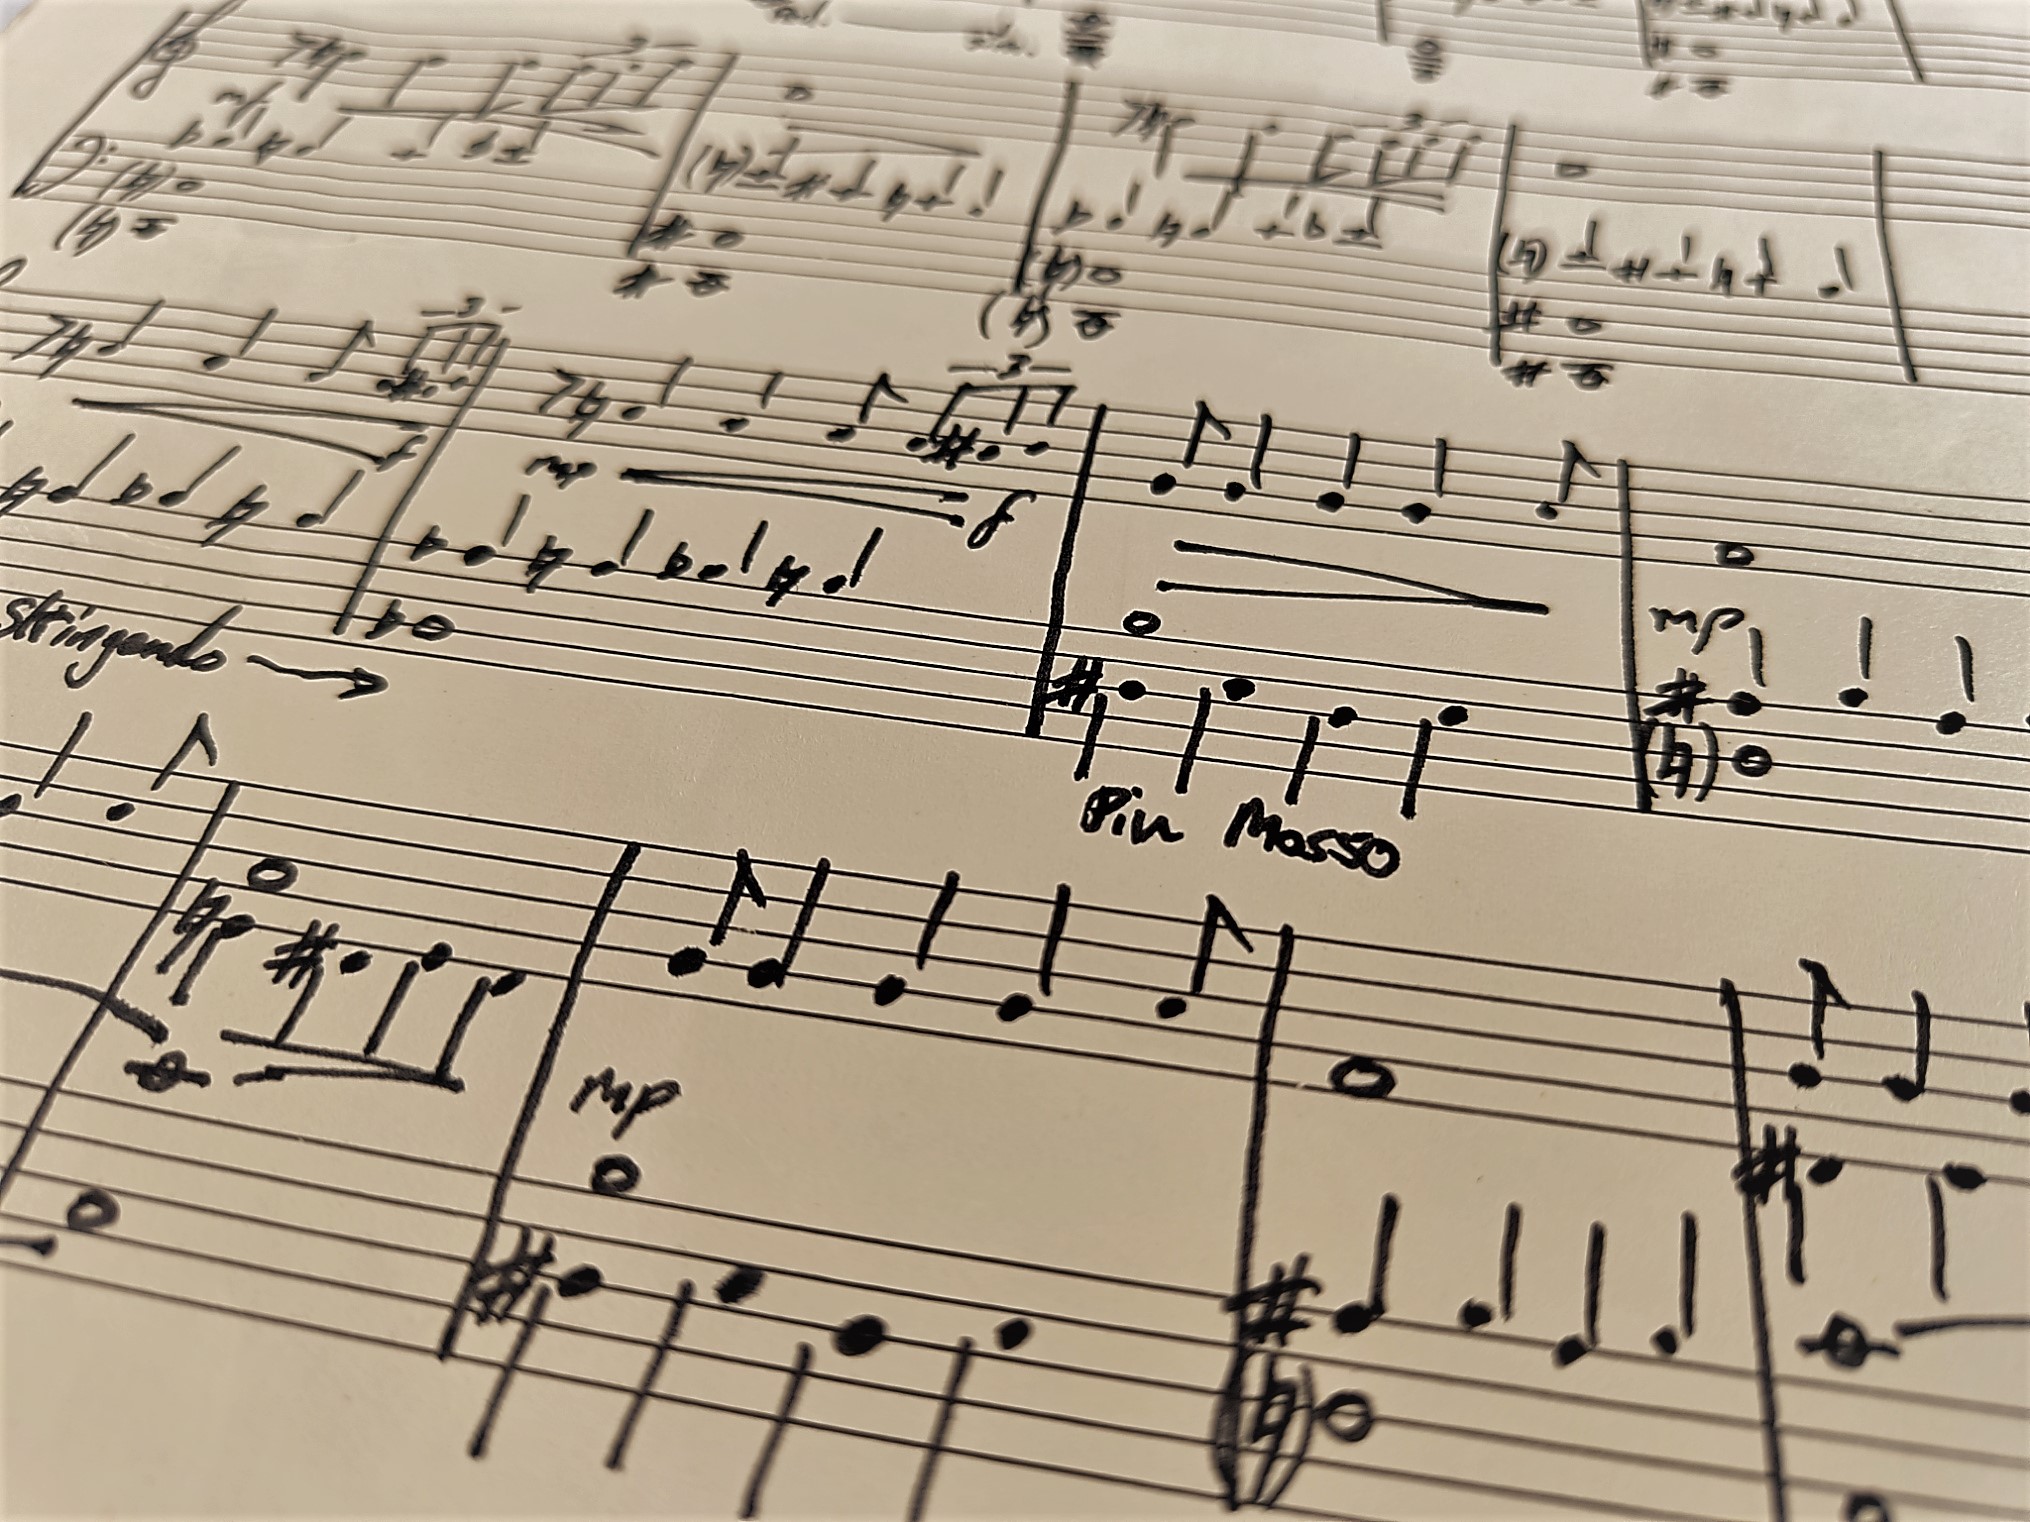 extract of original piano score written in fountain pen